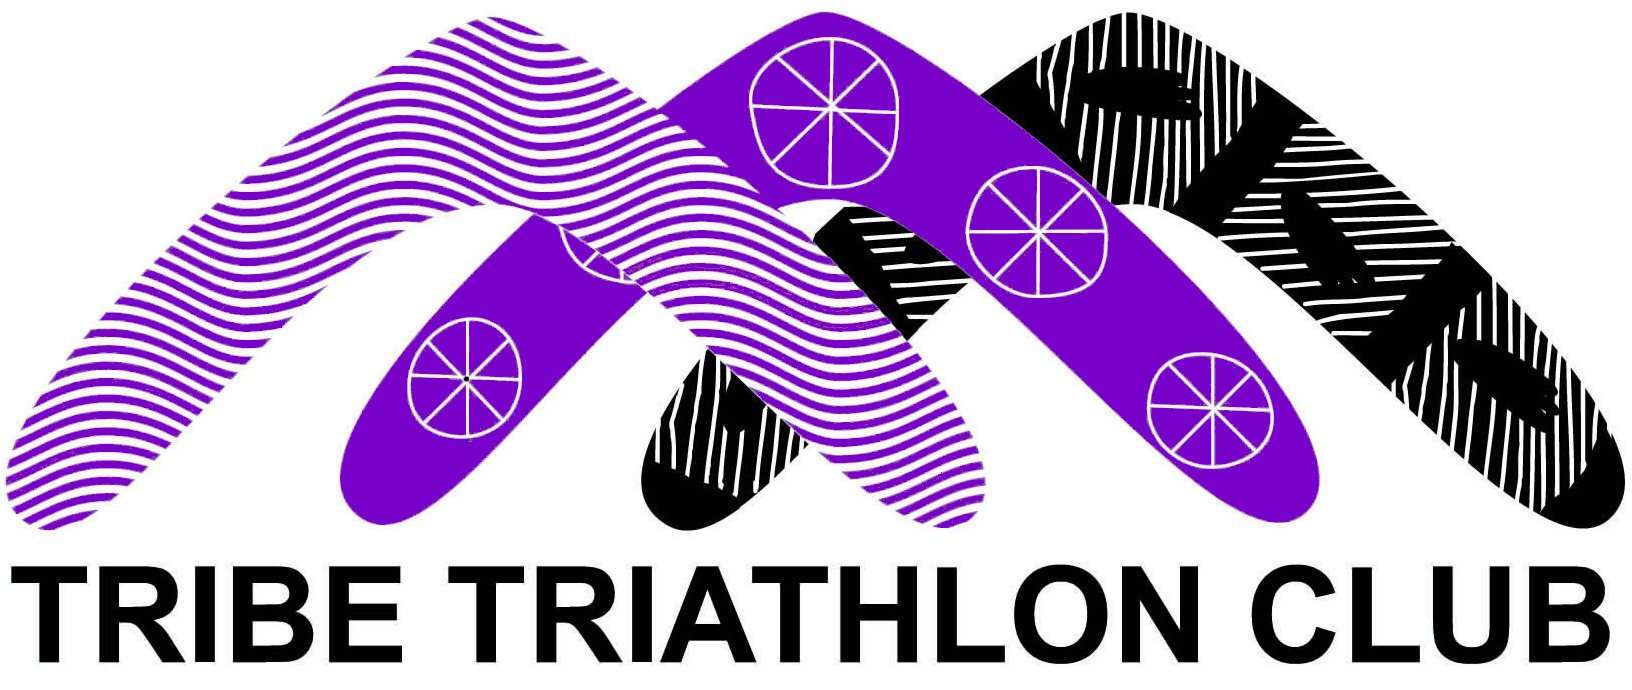 Tribe Triathlon Club